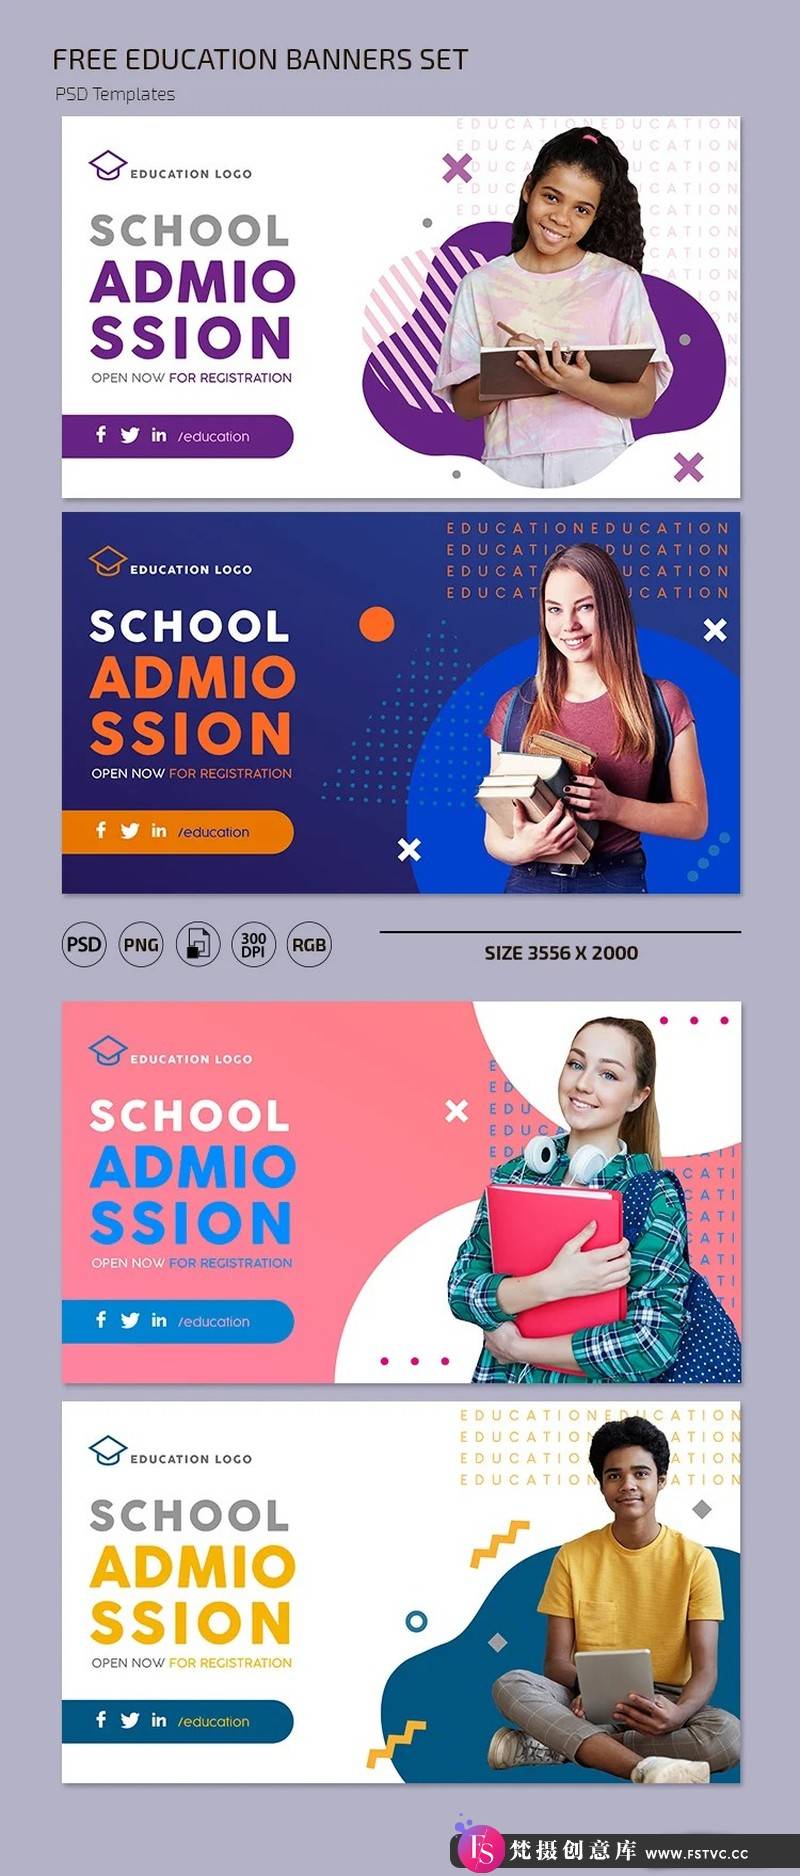 [创意设计]4款学校培训教育海报设计模板-梵摄创意库